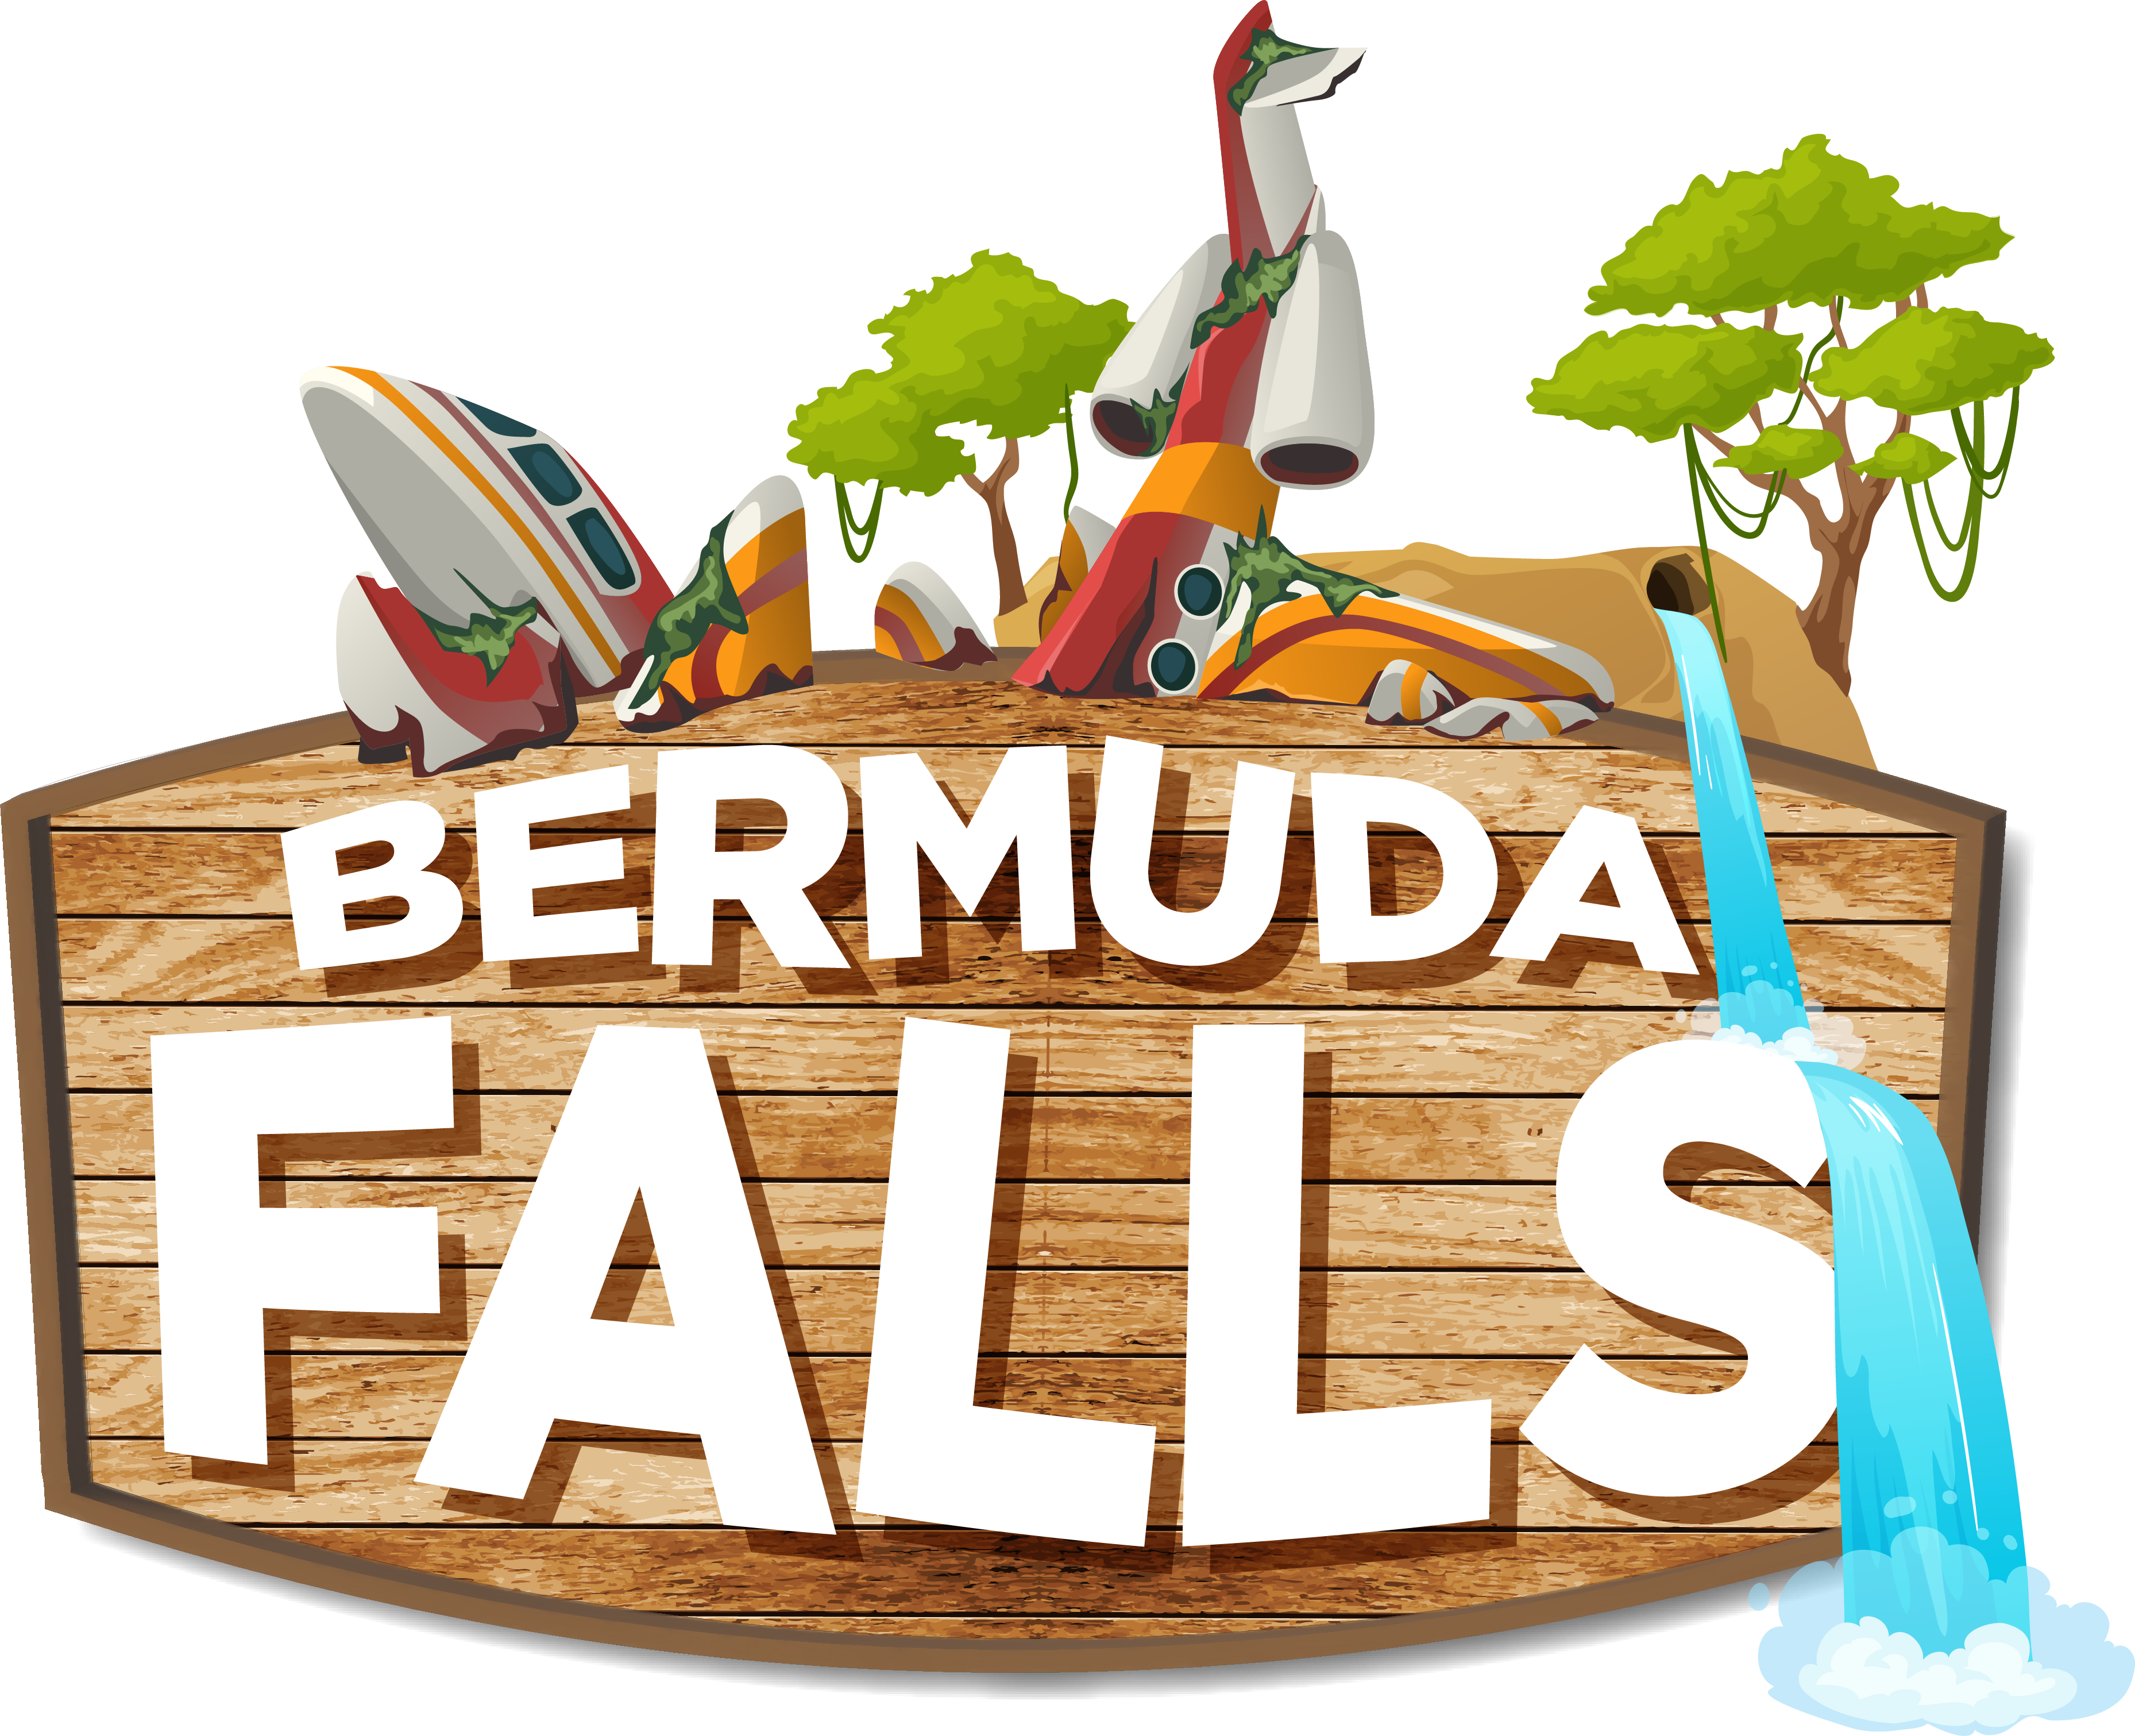 Bermuda Falls